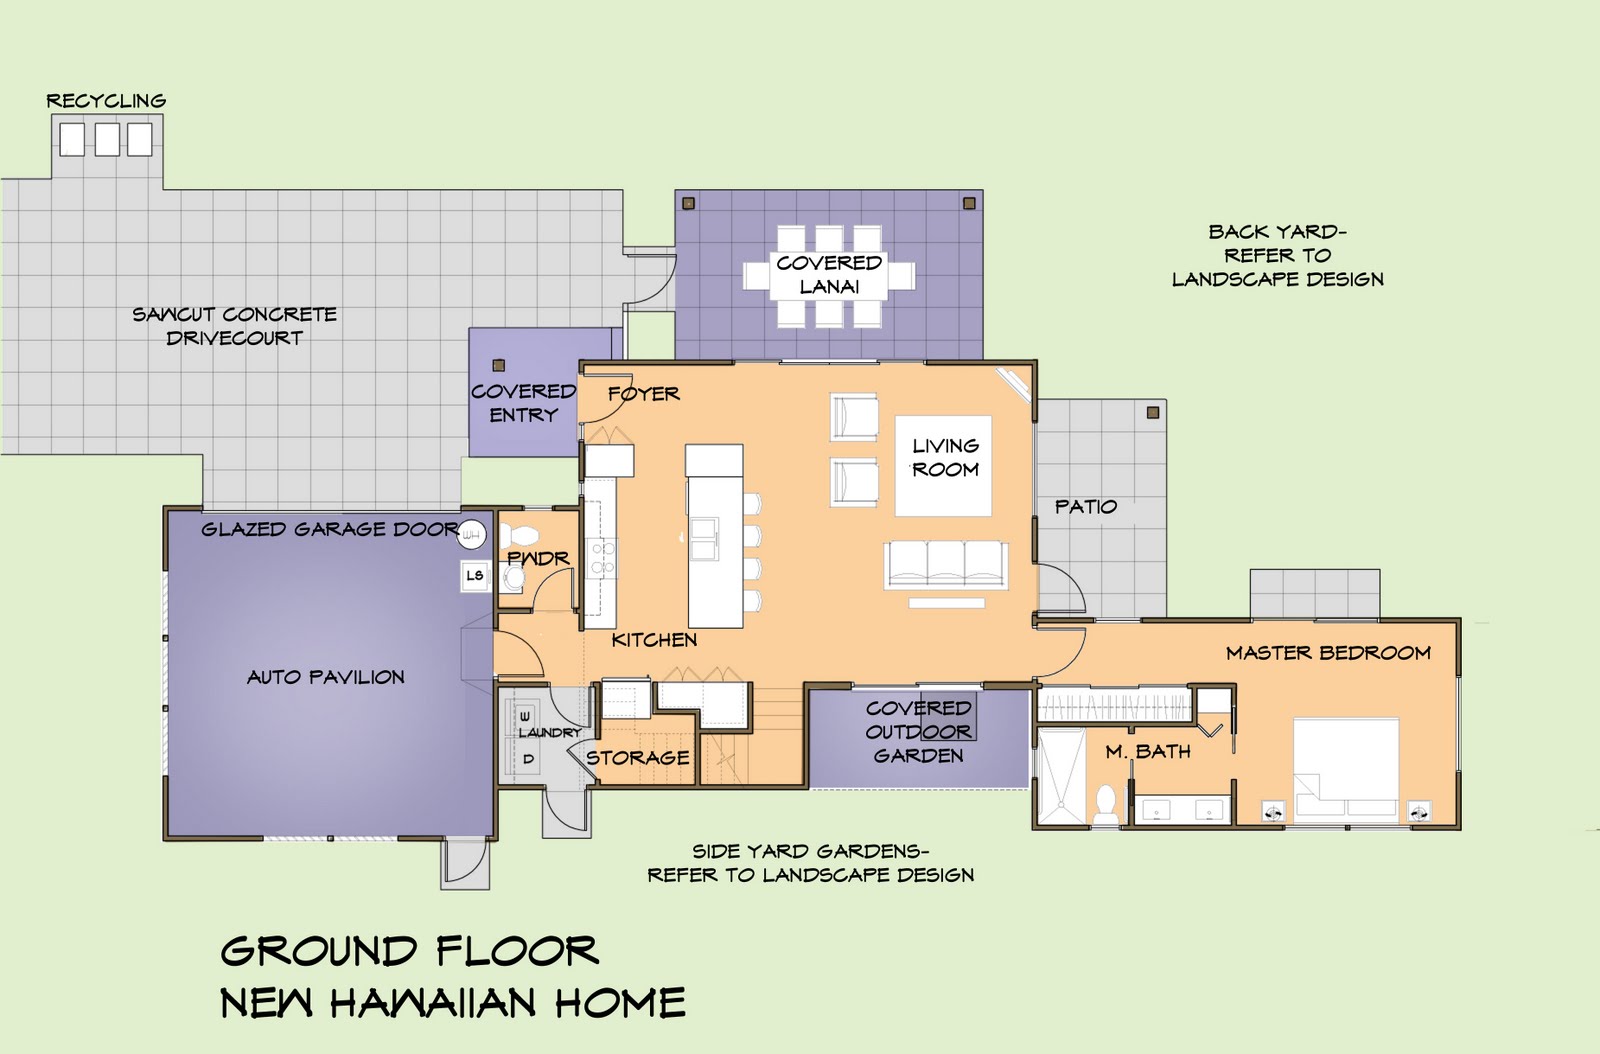 New Hawaiian Home NHH First Floor Plan